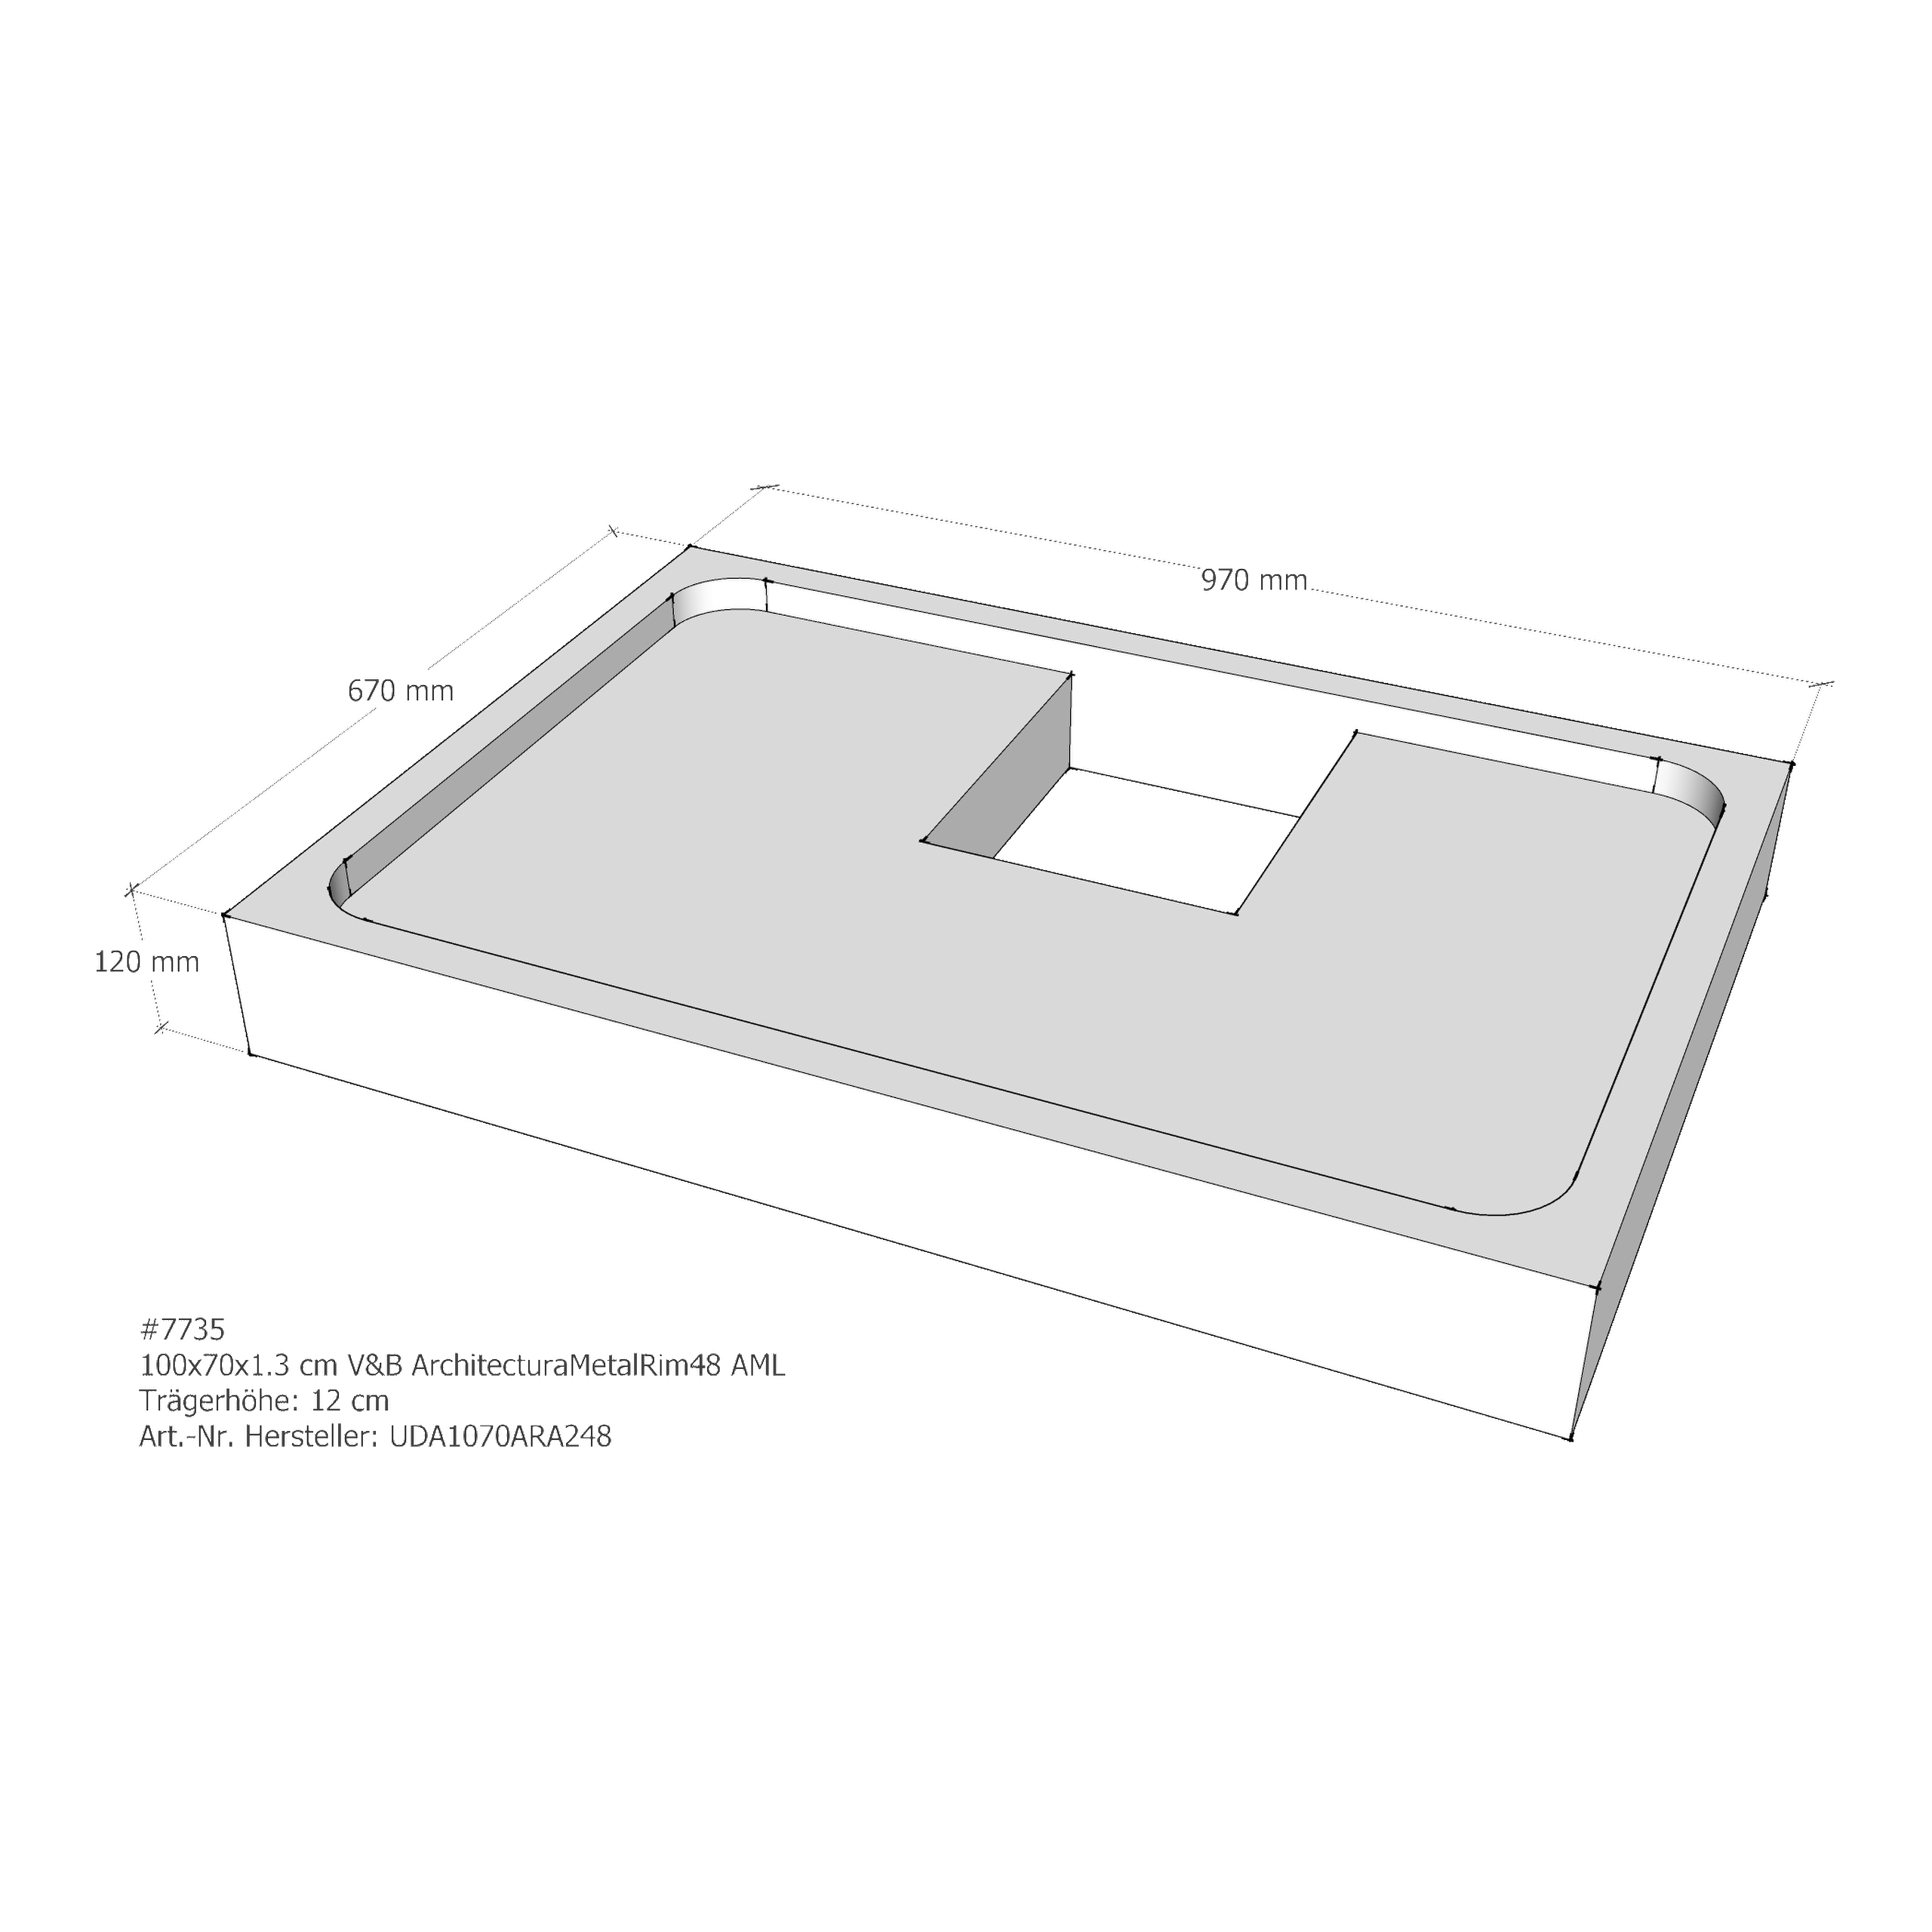 Duschwannenträger für Villeroy & Boch ArchitecturaMetalRim48 100 × 70 × 1,3 cm